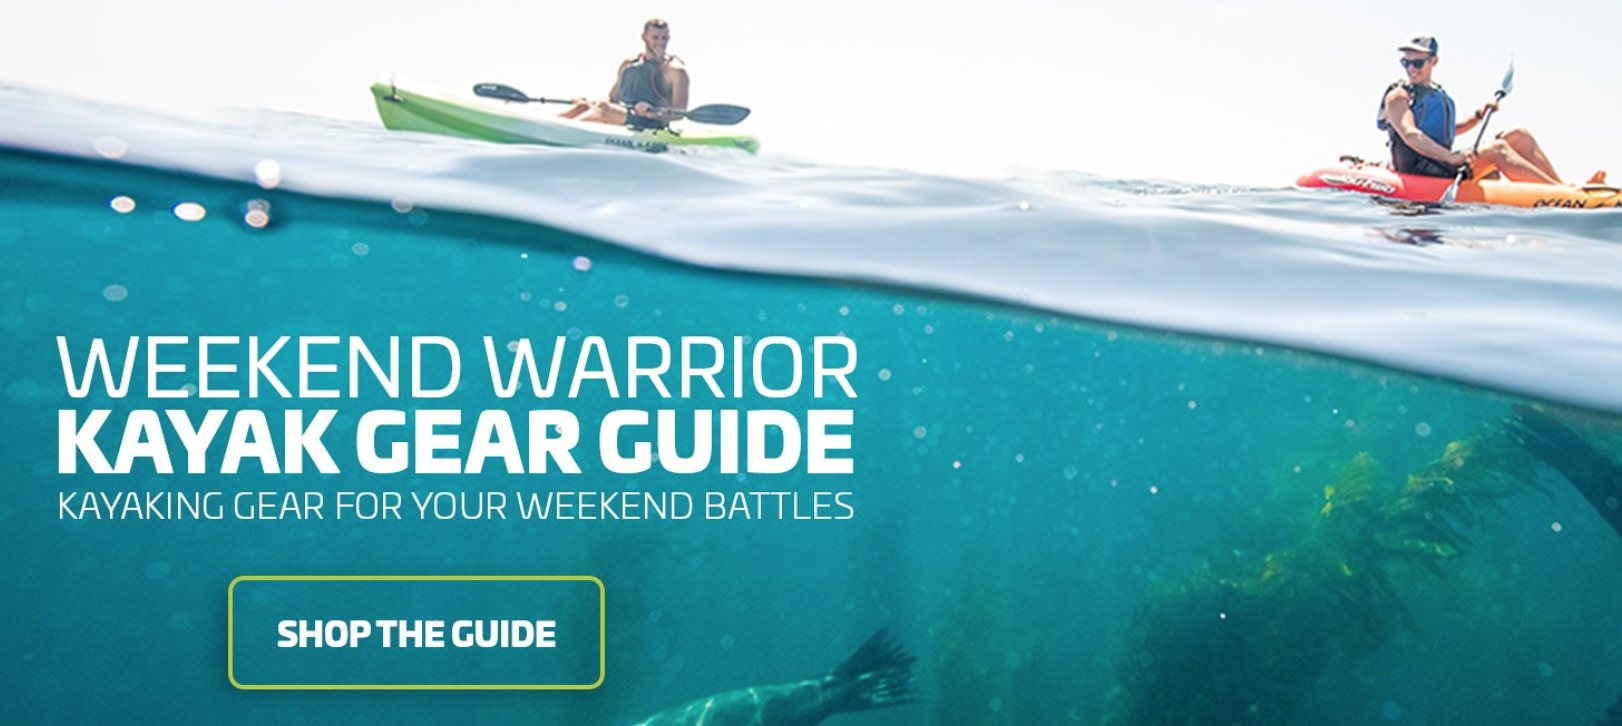 Weekend Warrior Gear Guide